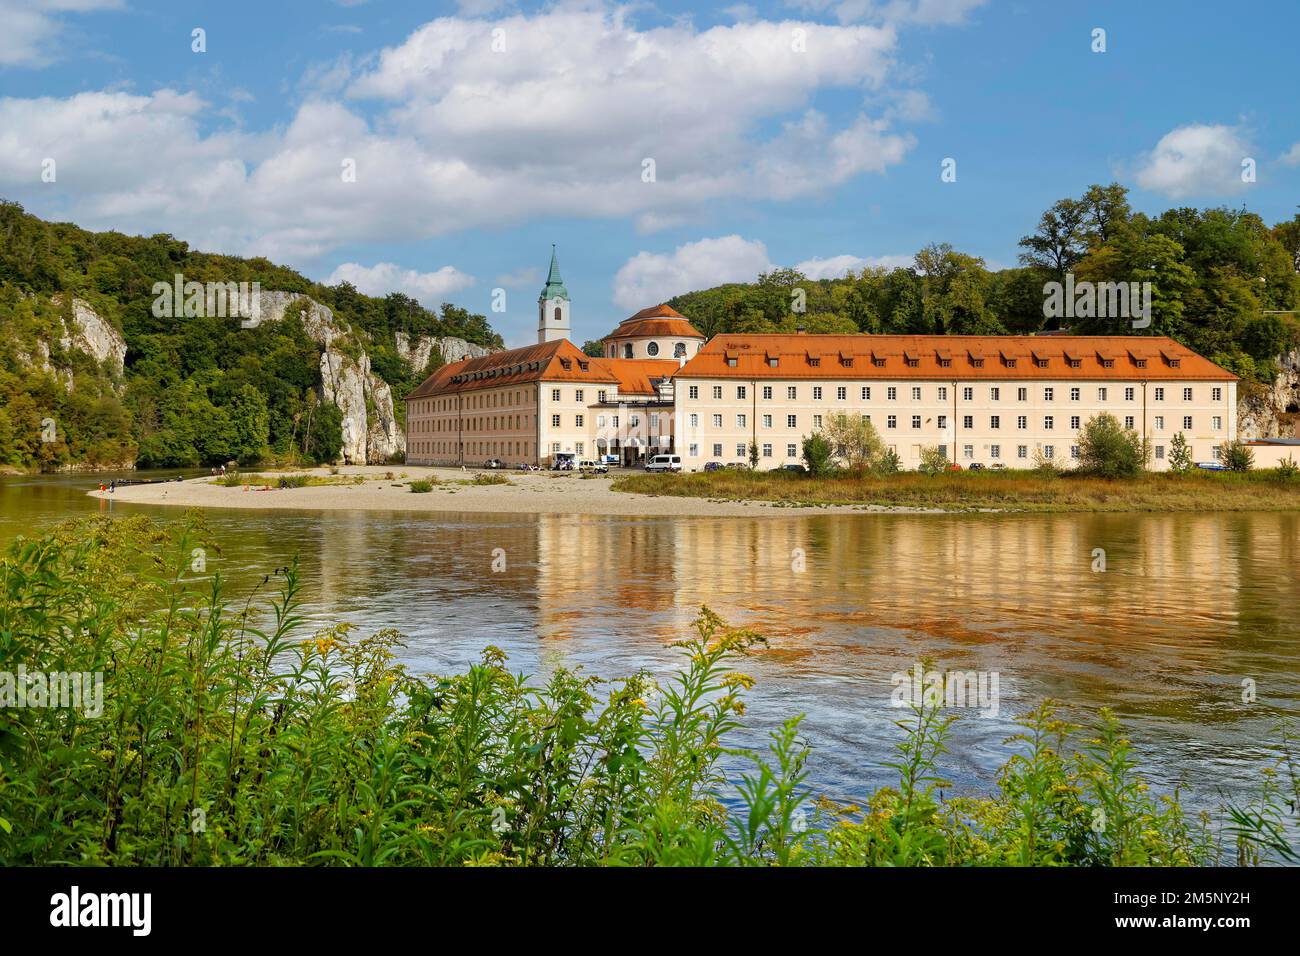 Monastère de Weltenburg, Abbaye bénédictine de St. George, près de la percée du Danube, également connu sous le nom de Weltenburg Narrows, dans une boucle du Danube dedans Banque D'Images